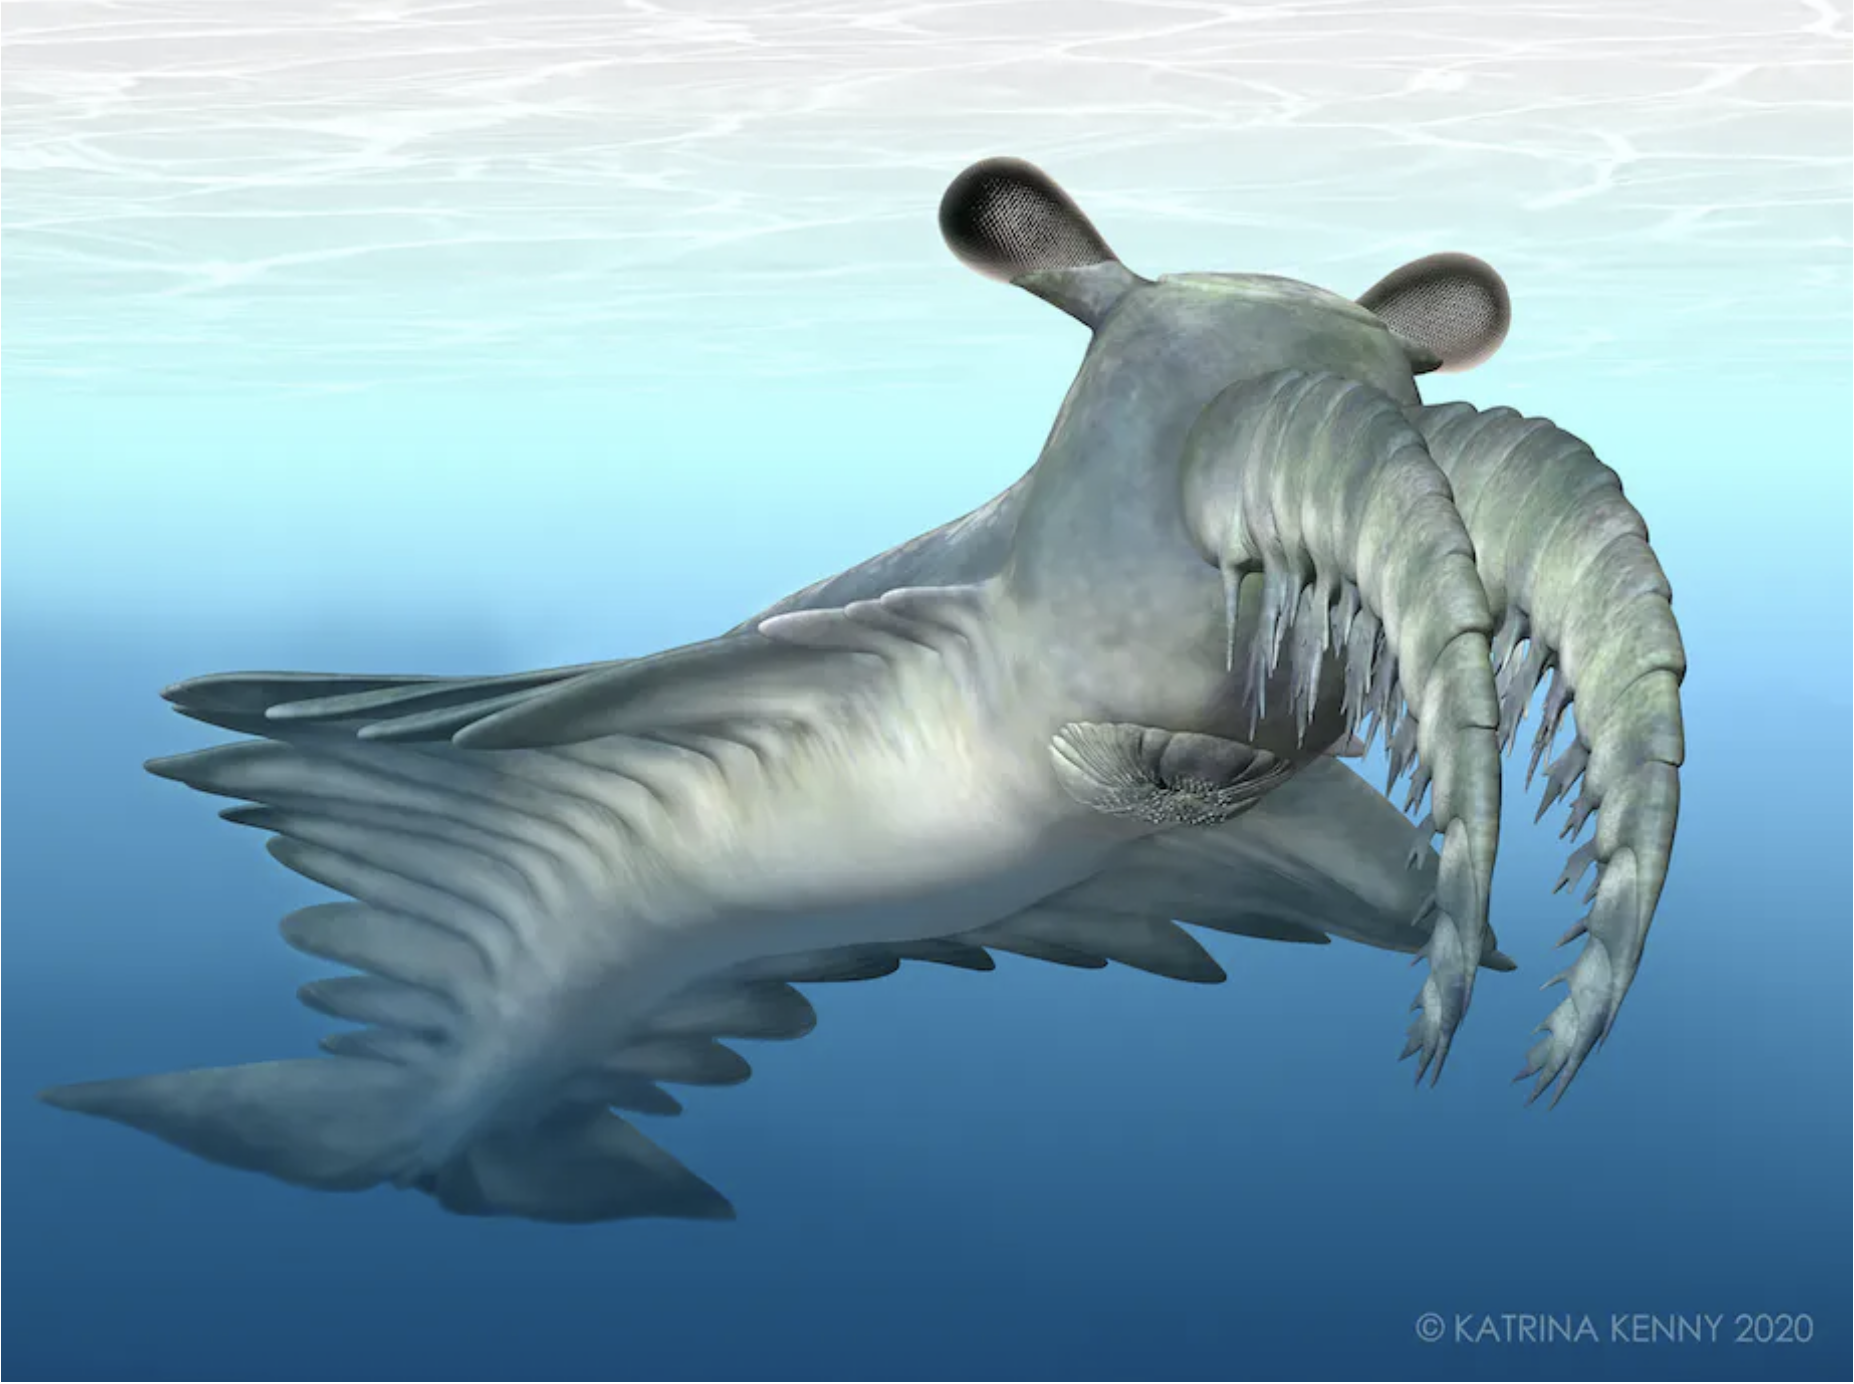 Artist's impression of the Cambrian marine invertebrate Anomalocaris daleyae